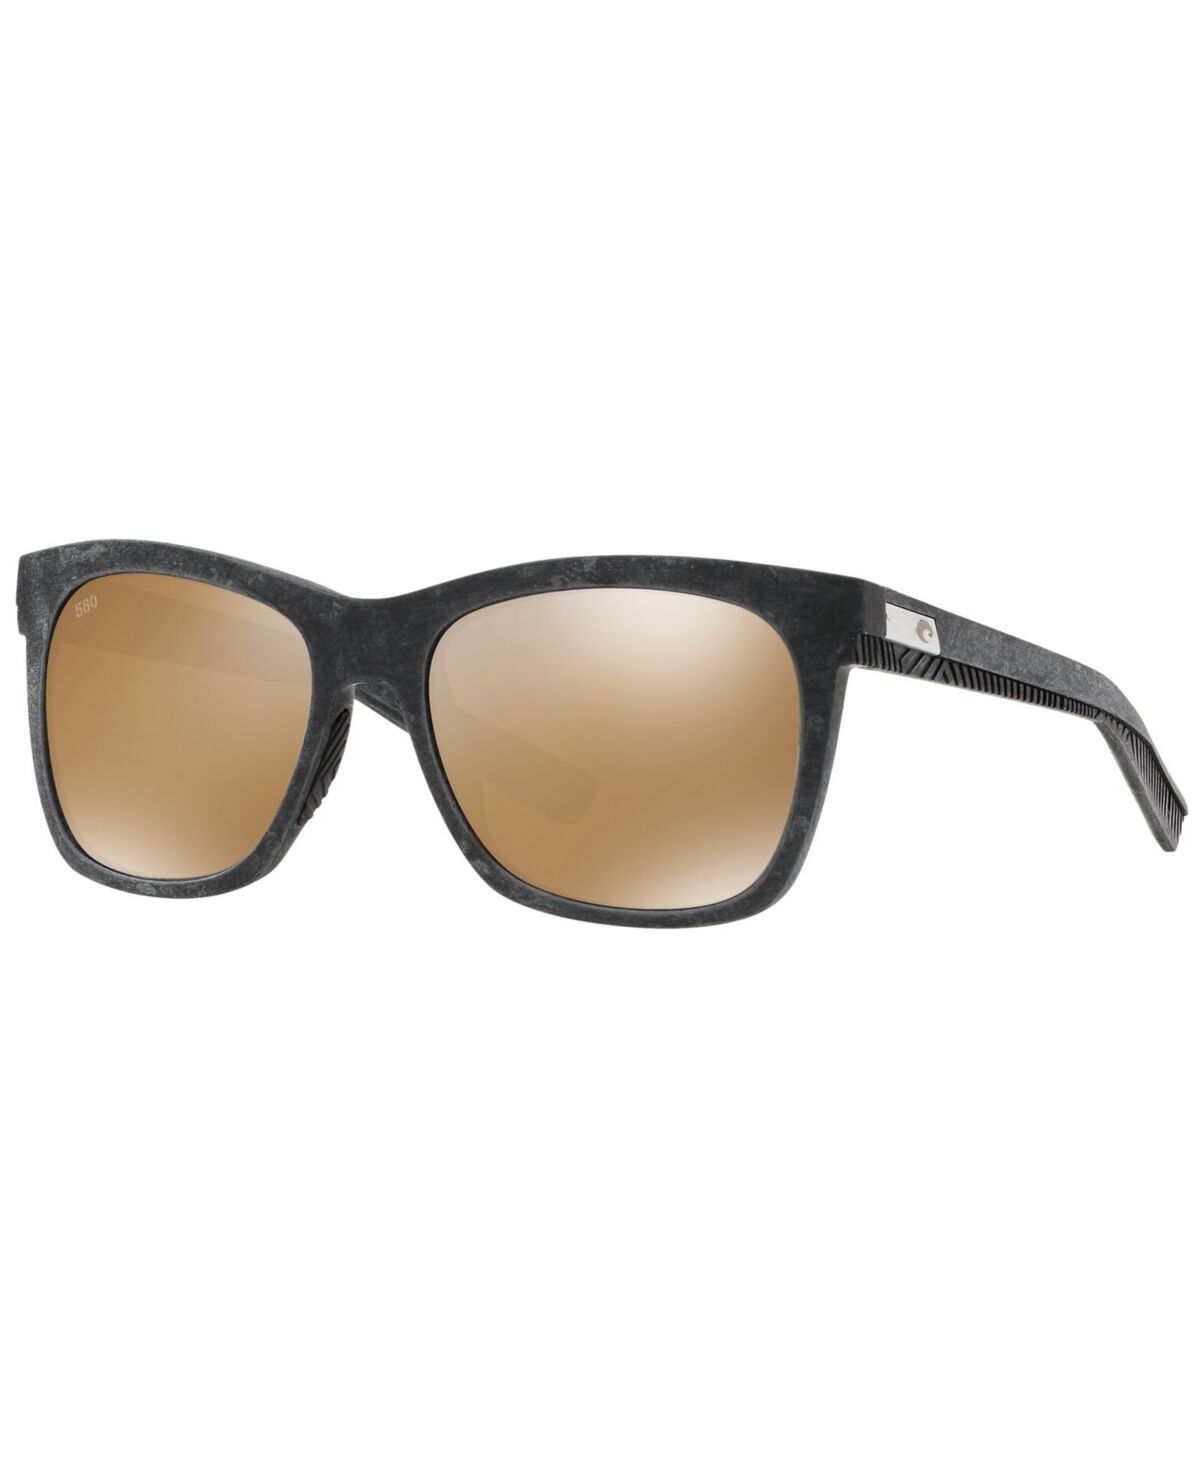 Costa Del Mar Women's Polarized Sunglasses, Caldera 55 - BLK/COPPER MIR